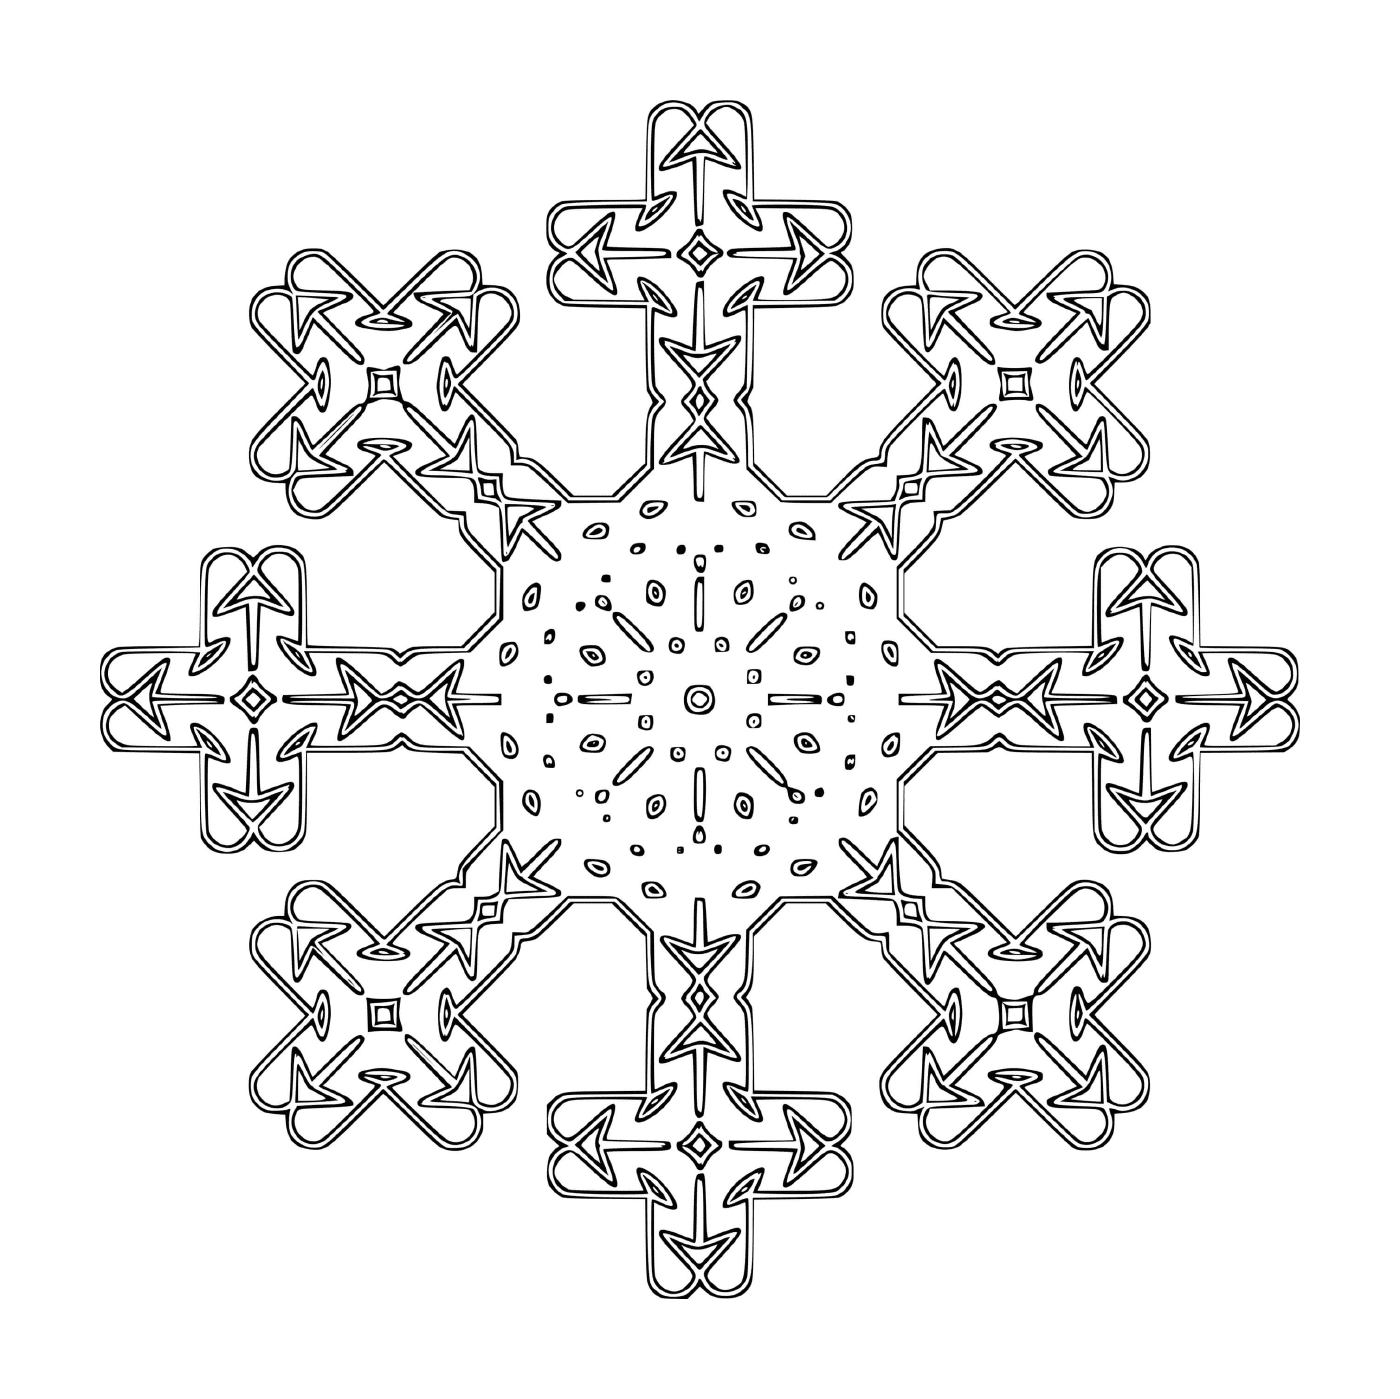  Un original copo de nieve en forma de cruz 